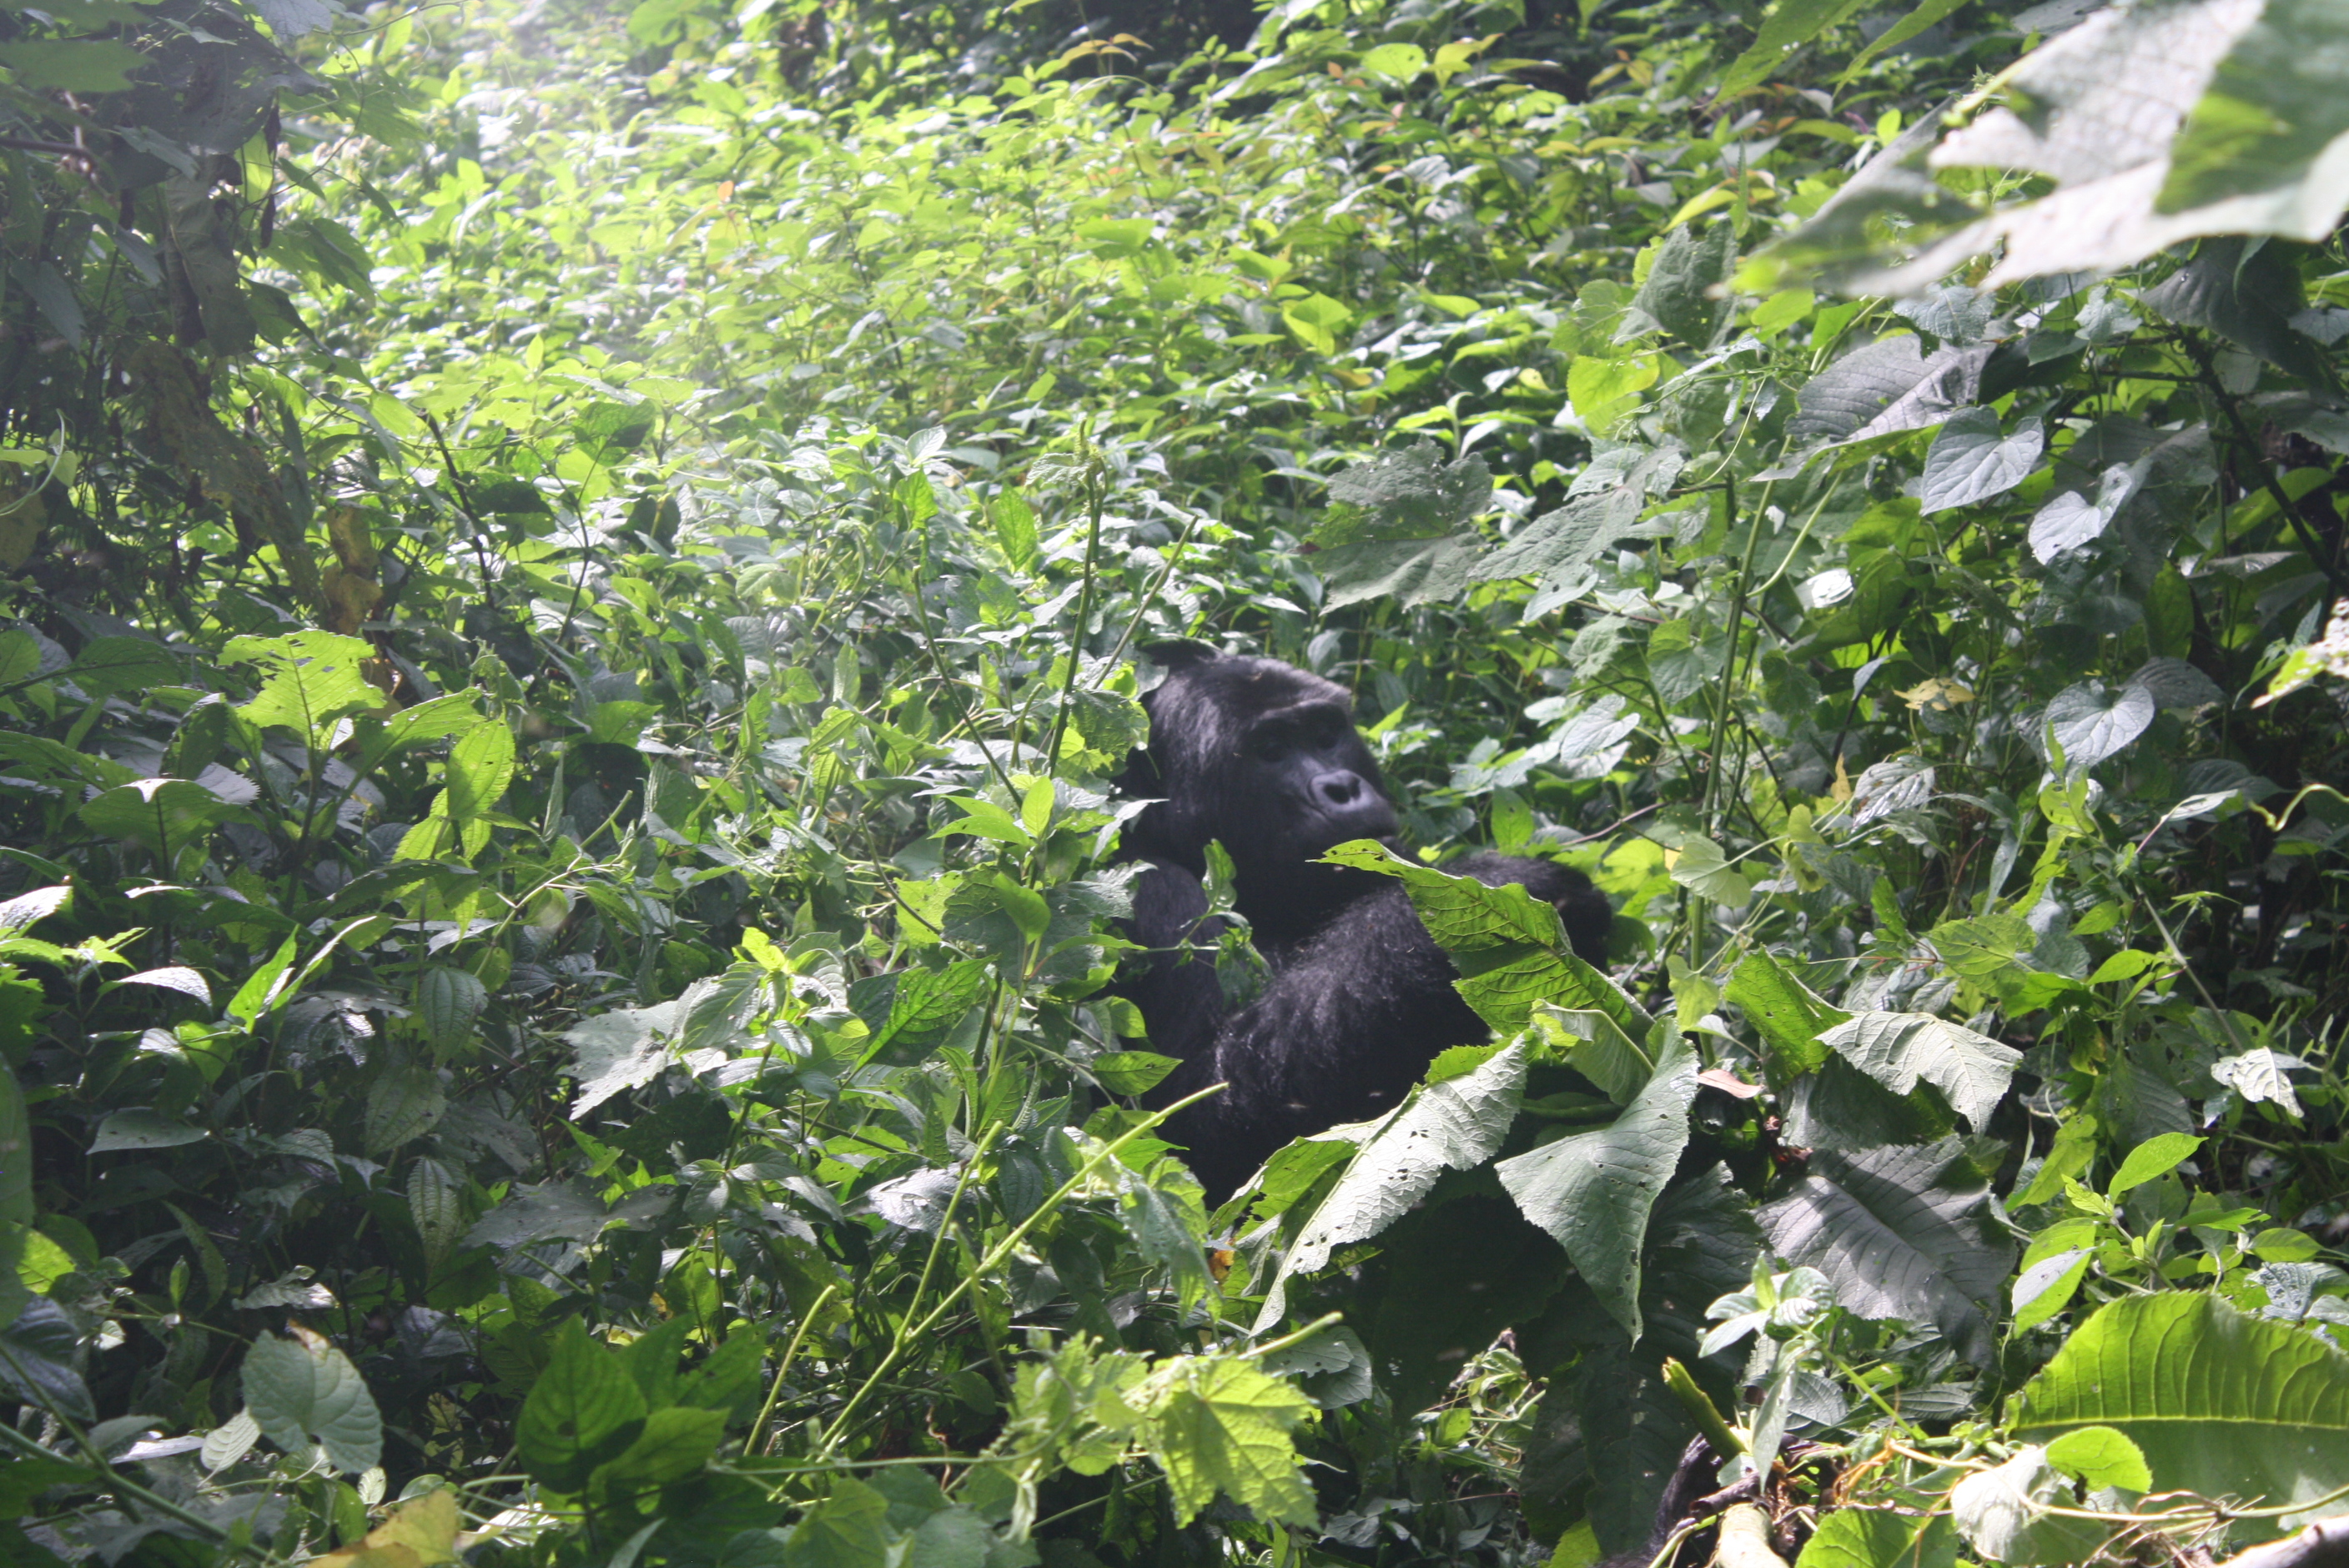 6 Days Uganda Gorilla Safari